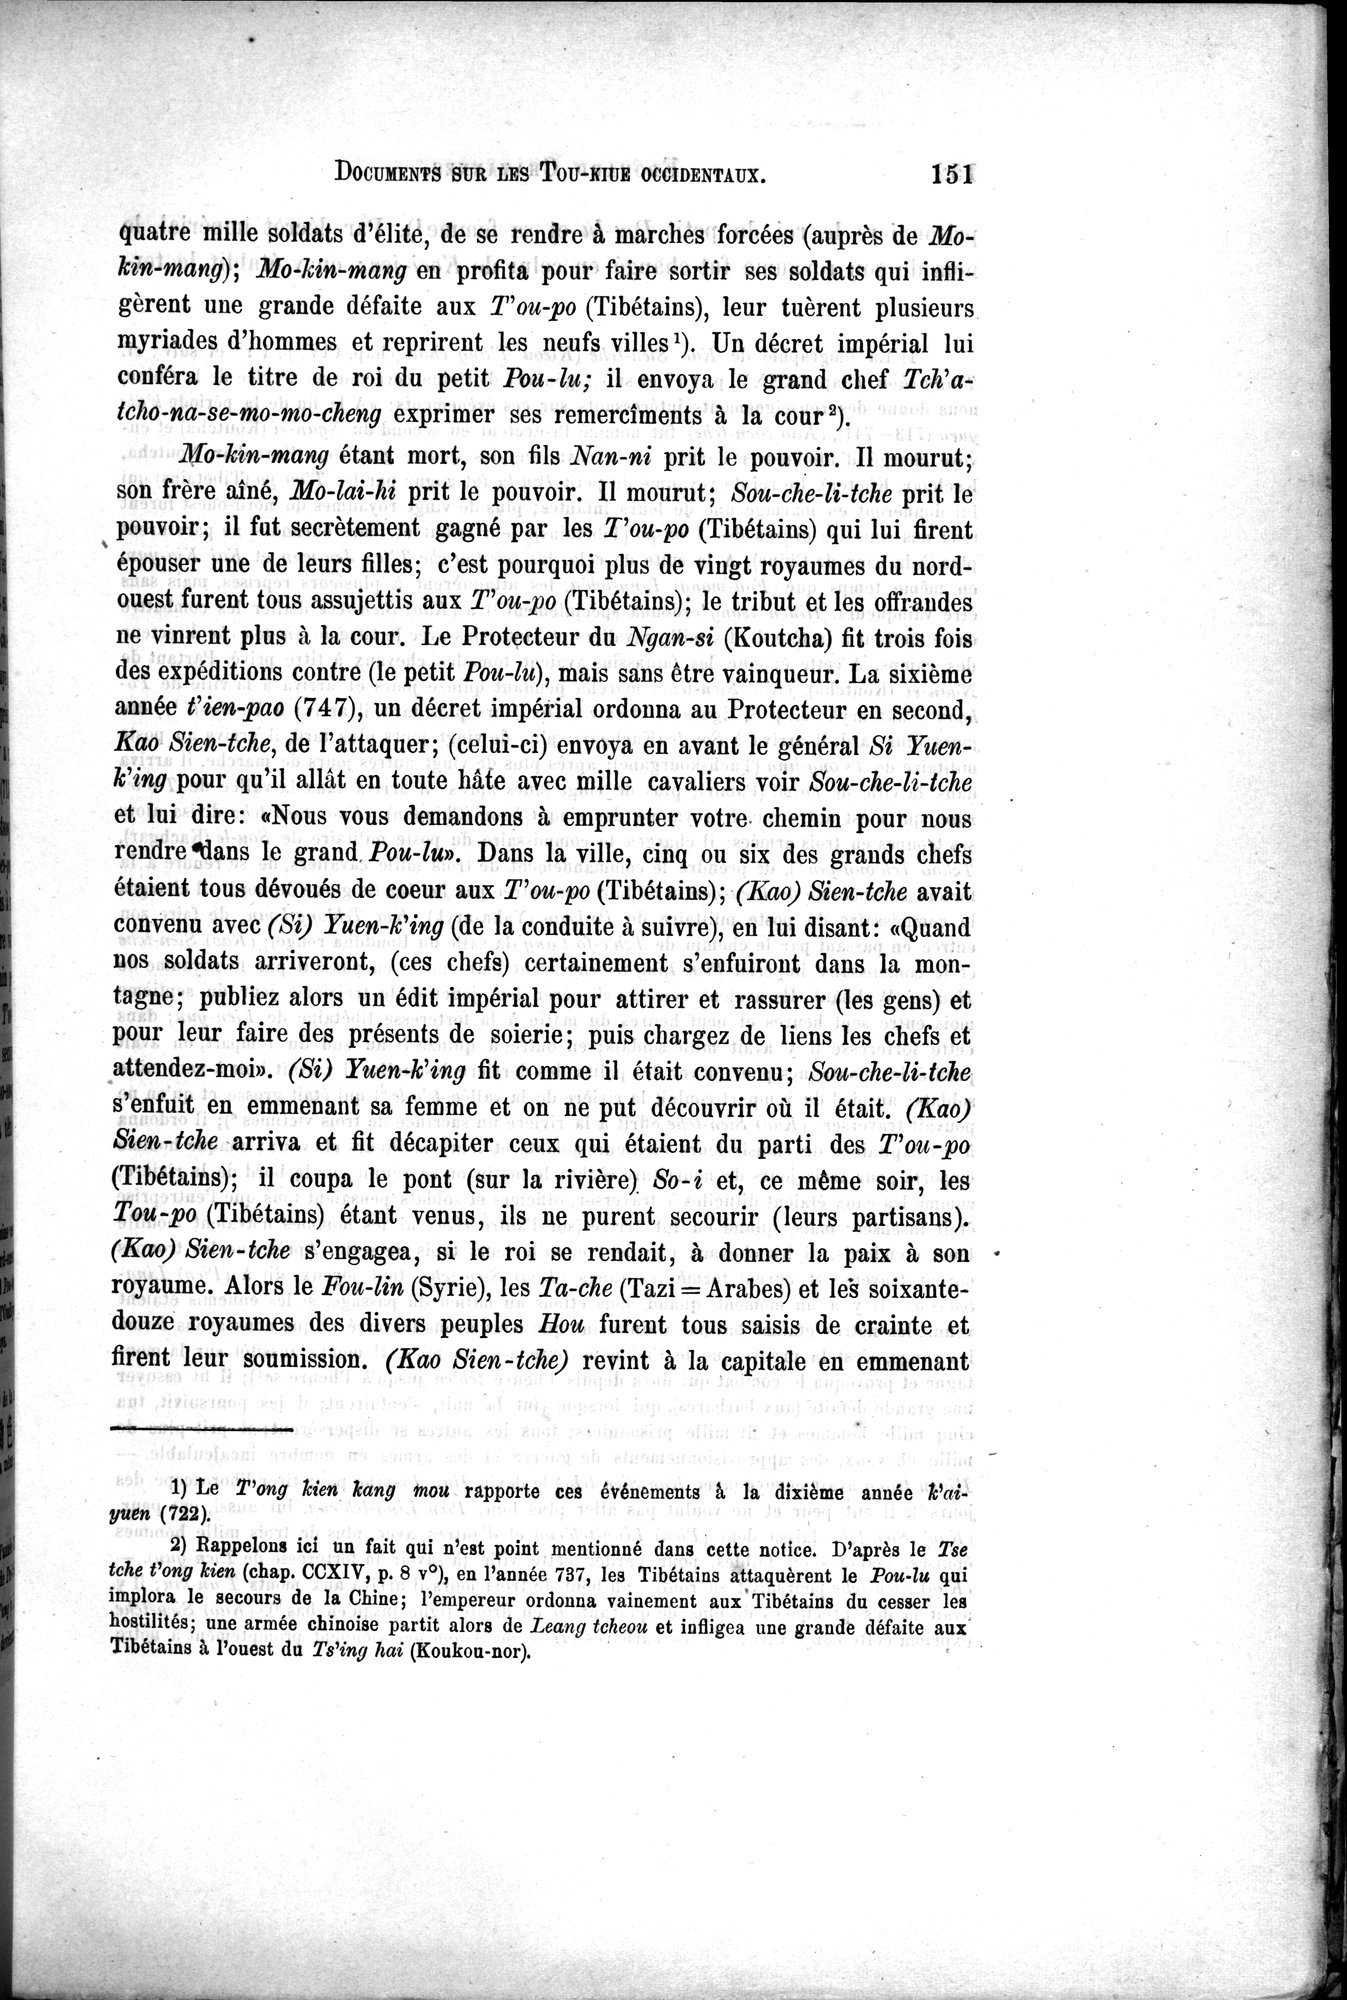 Documents sur les Tou-kiue (Turcs) occidentaux : vol.1 / Page 161 (Grayscale High Resolution Image)